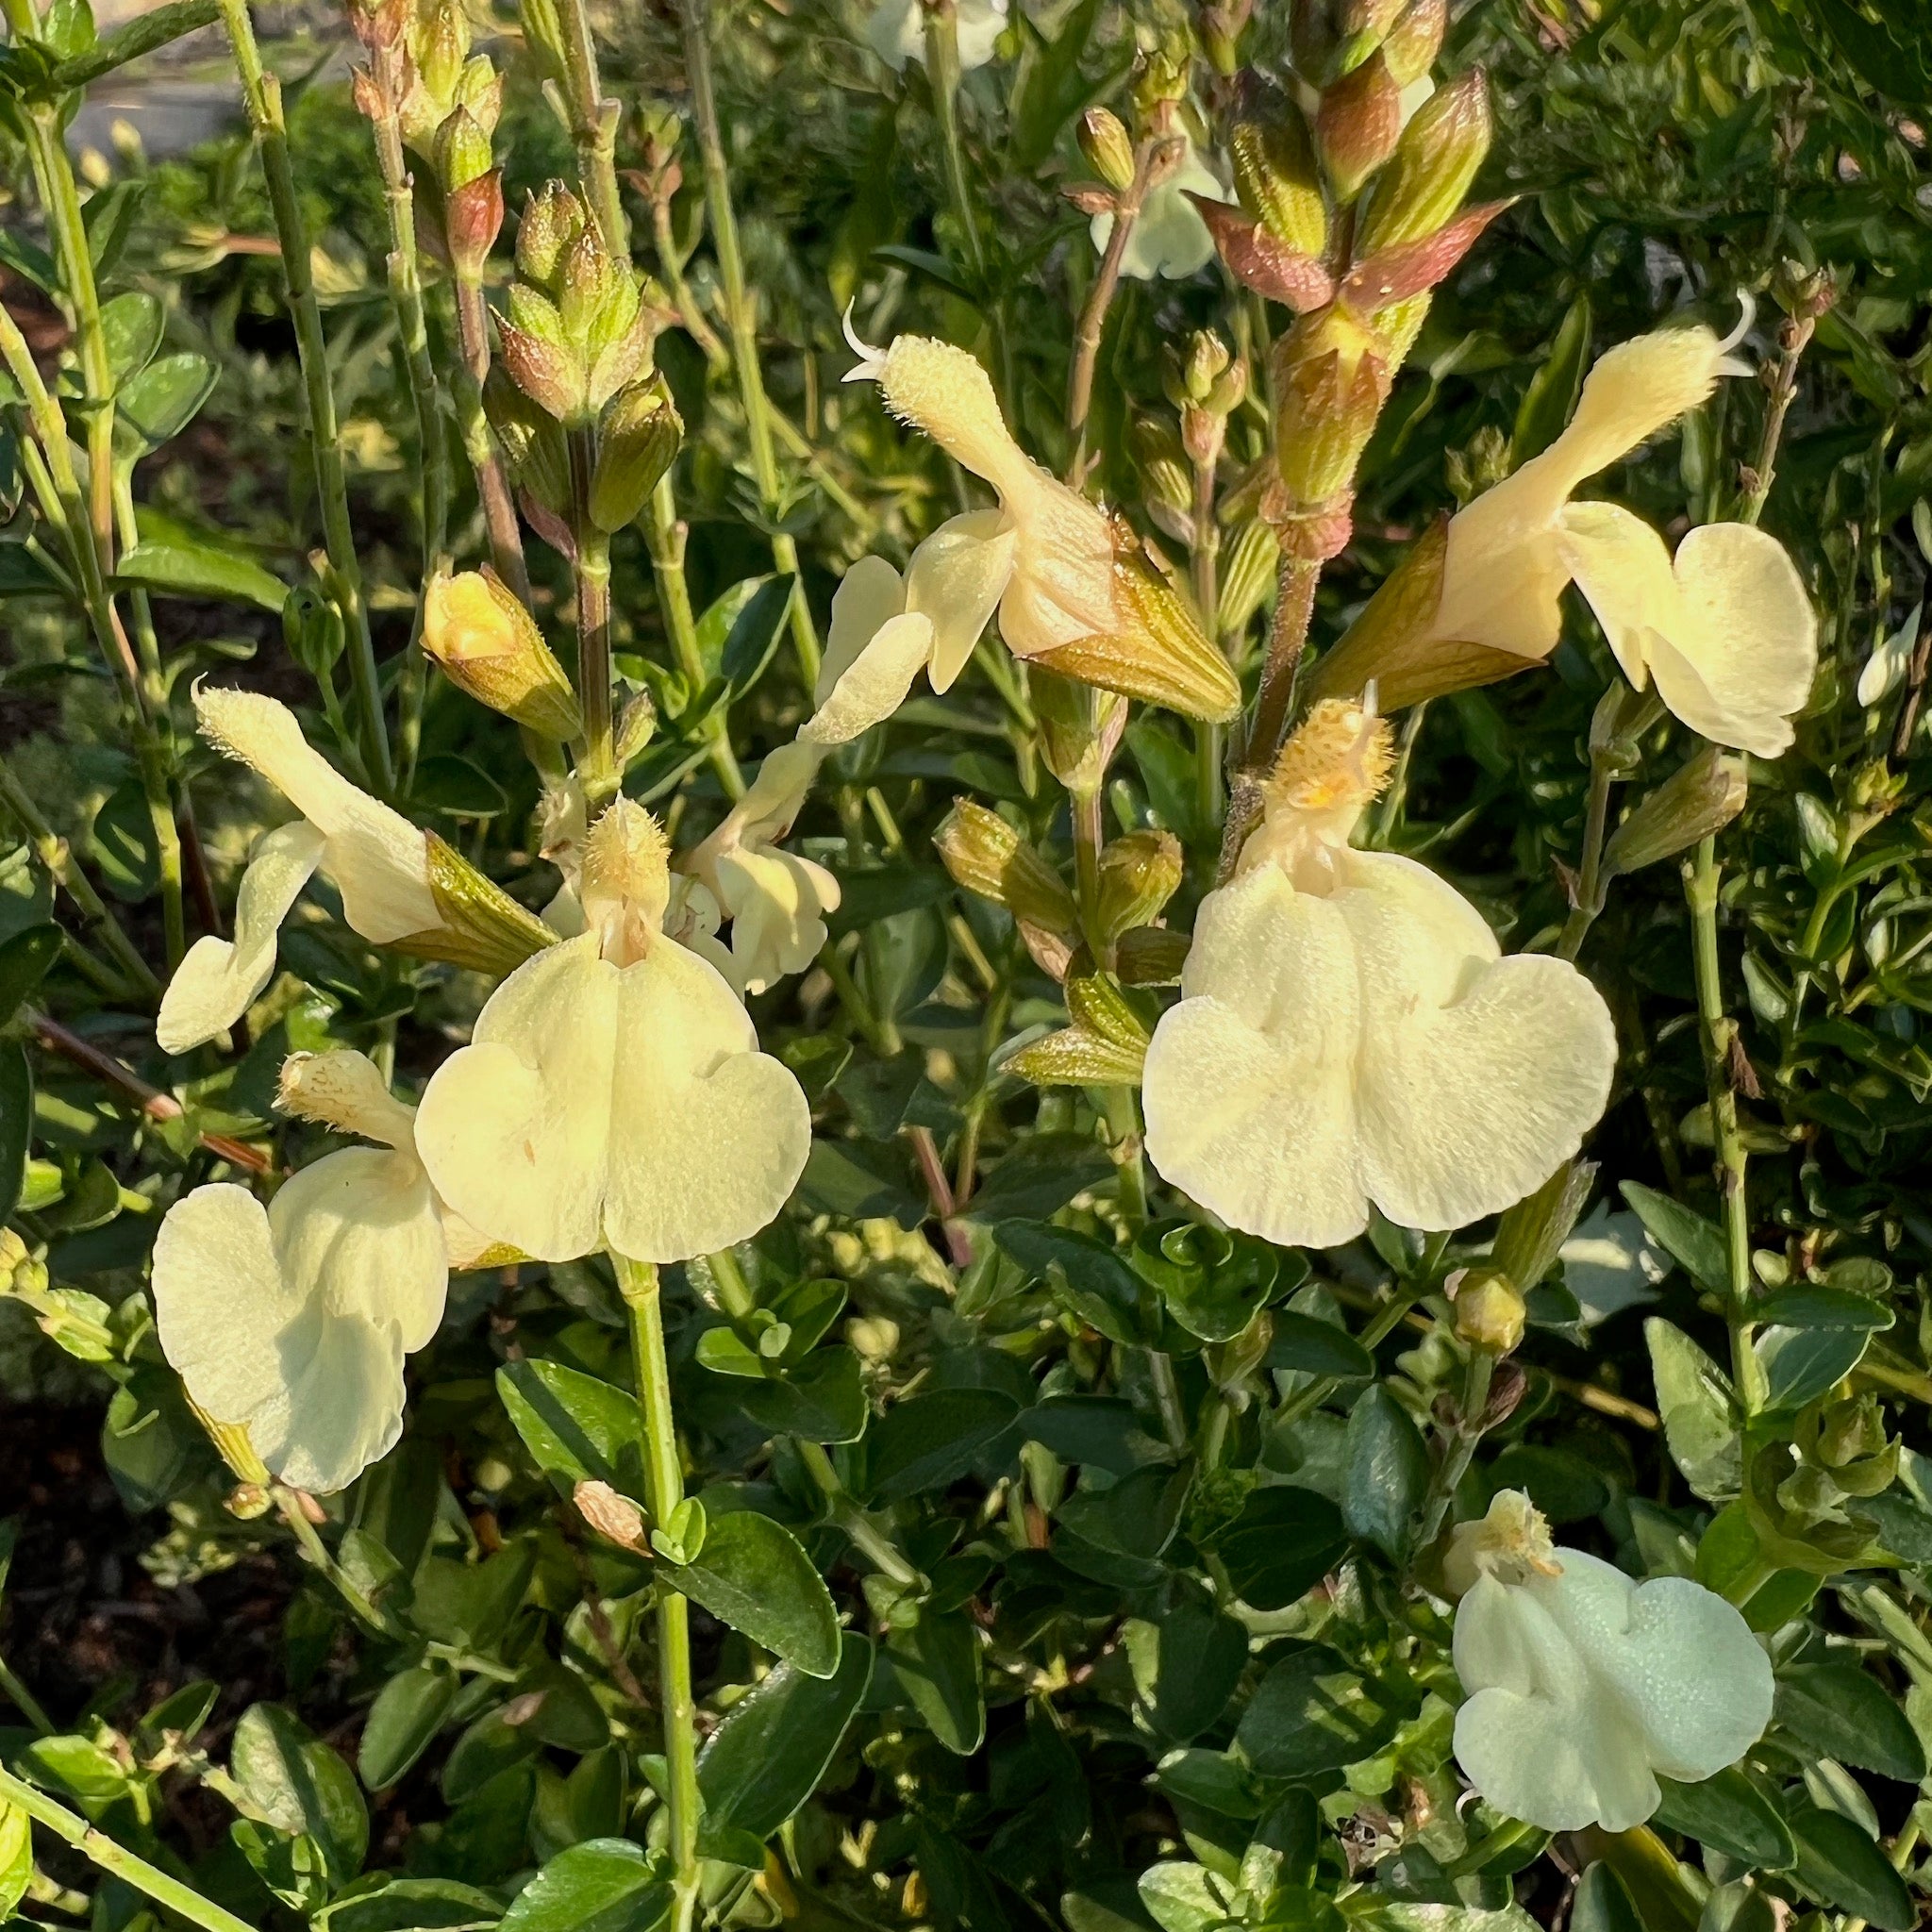 Salvia x jamensis 'Cienega de Oro' - Cienega de Oro Sage